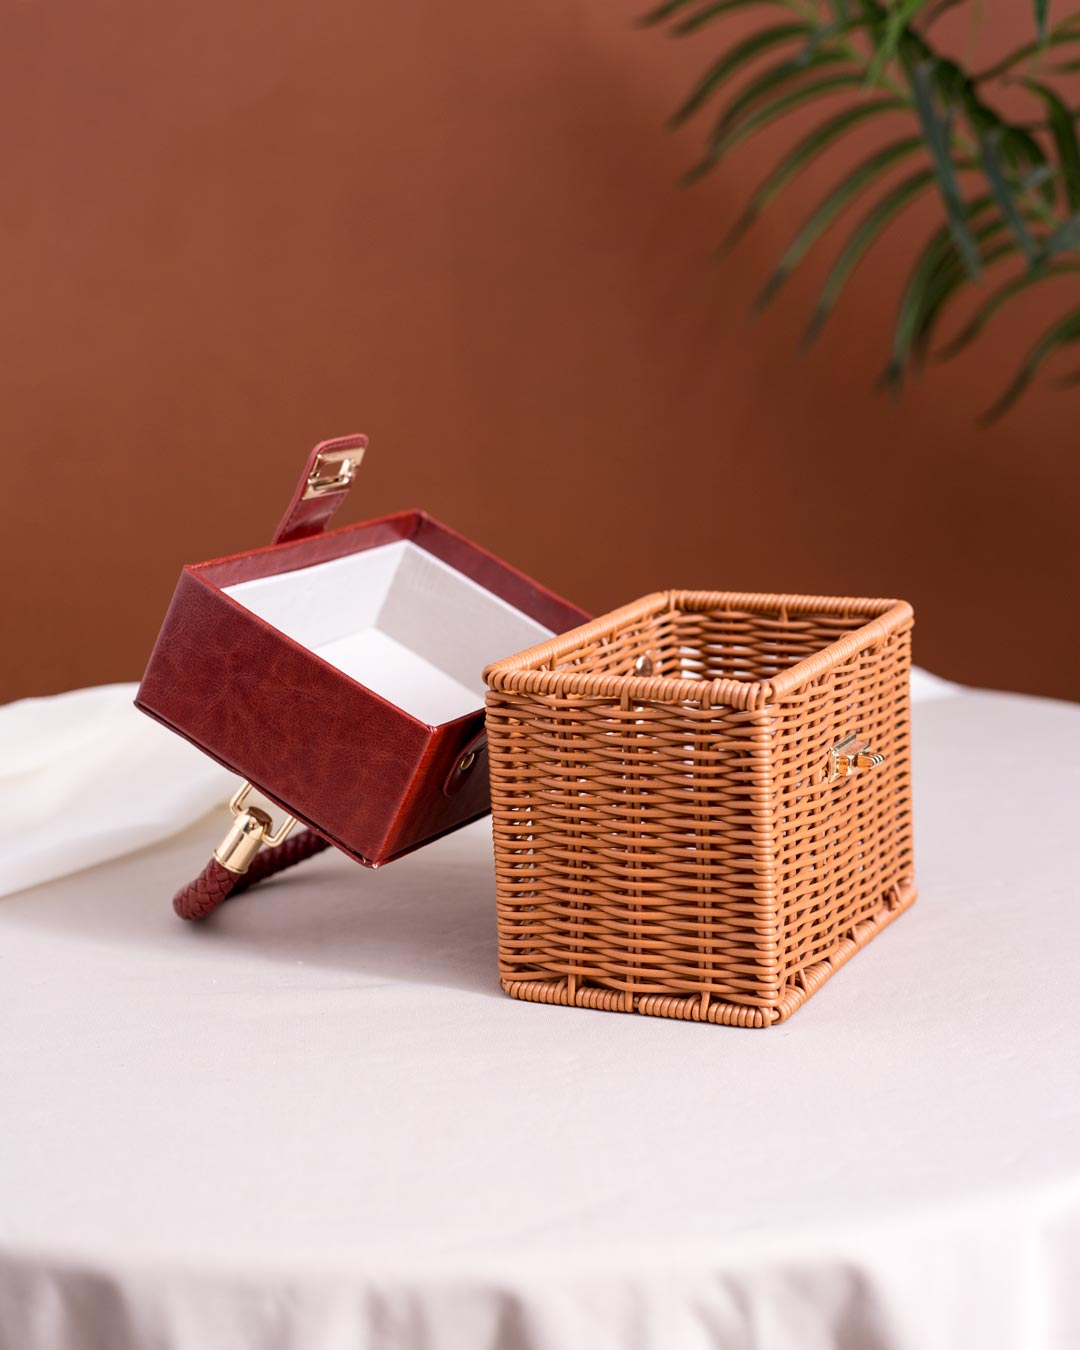 Open decorative souvenir basket